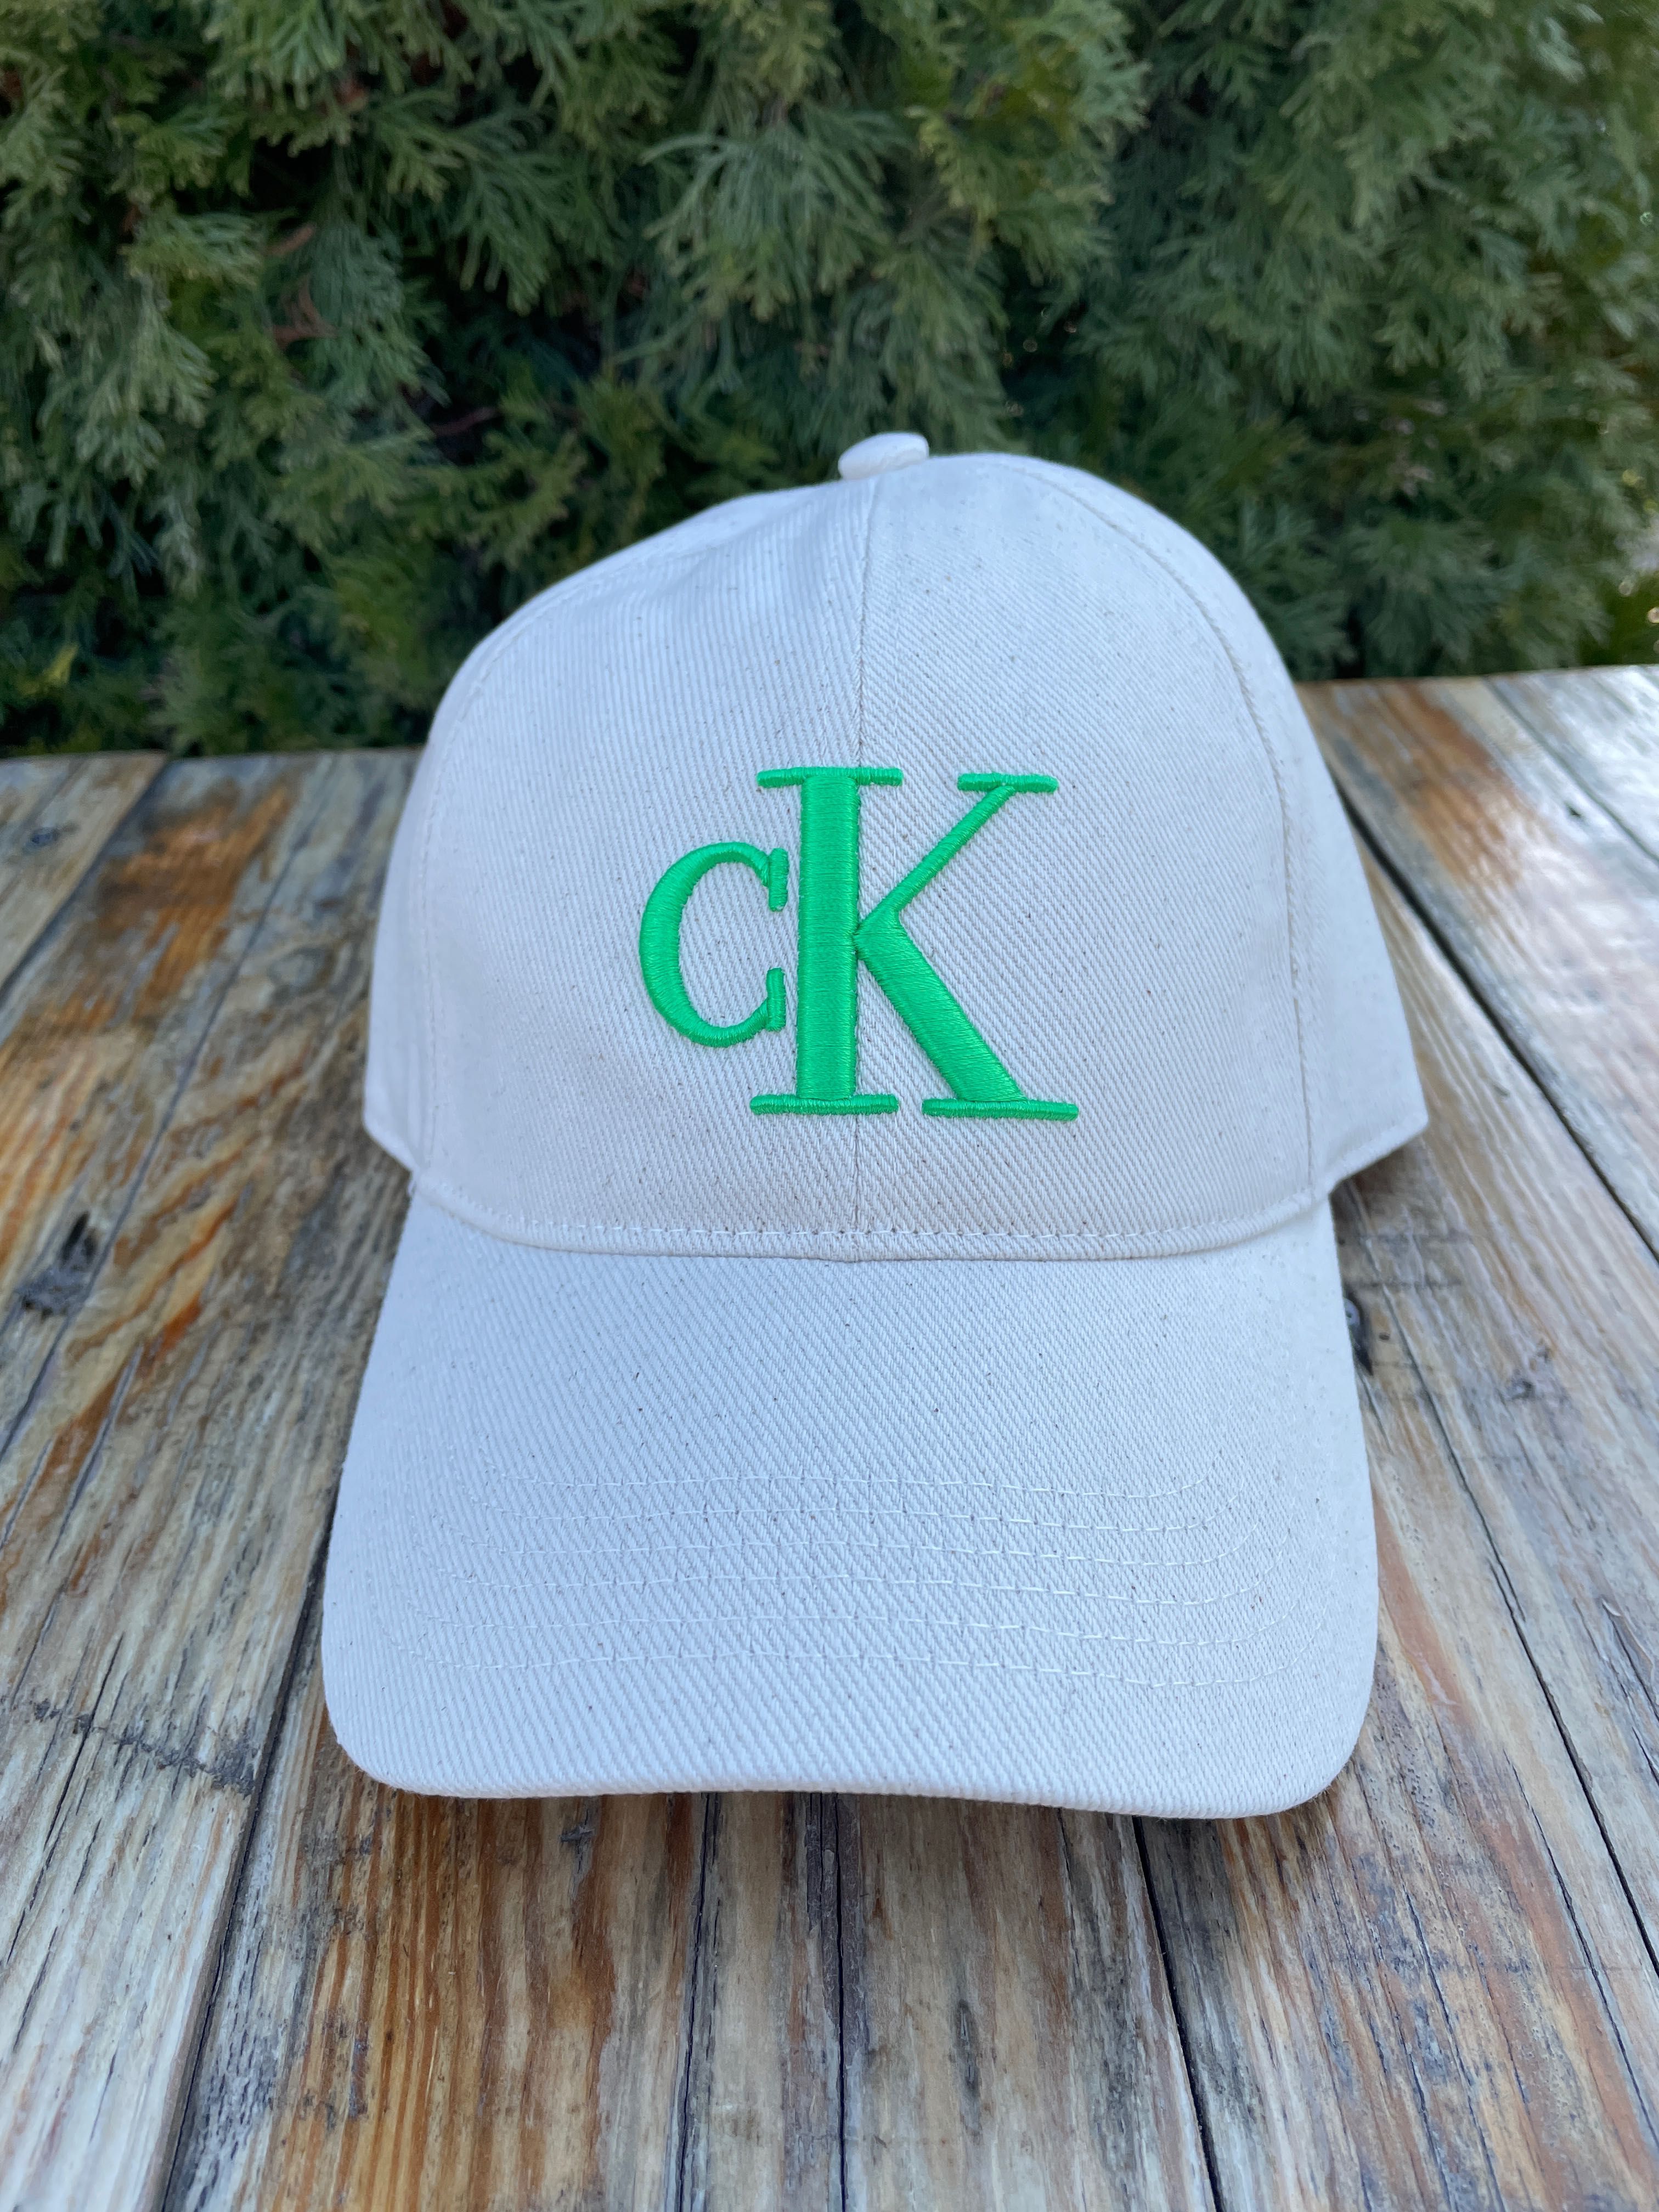 Новая кепка calvin klein бейсболка (ck naturals baseball cap)с америки